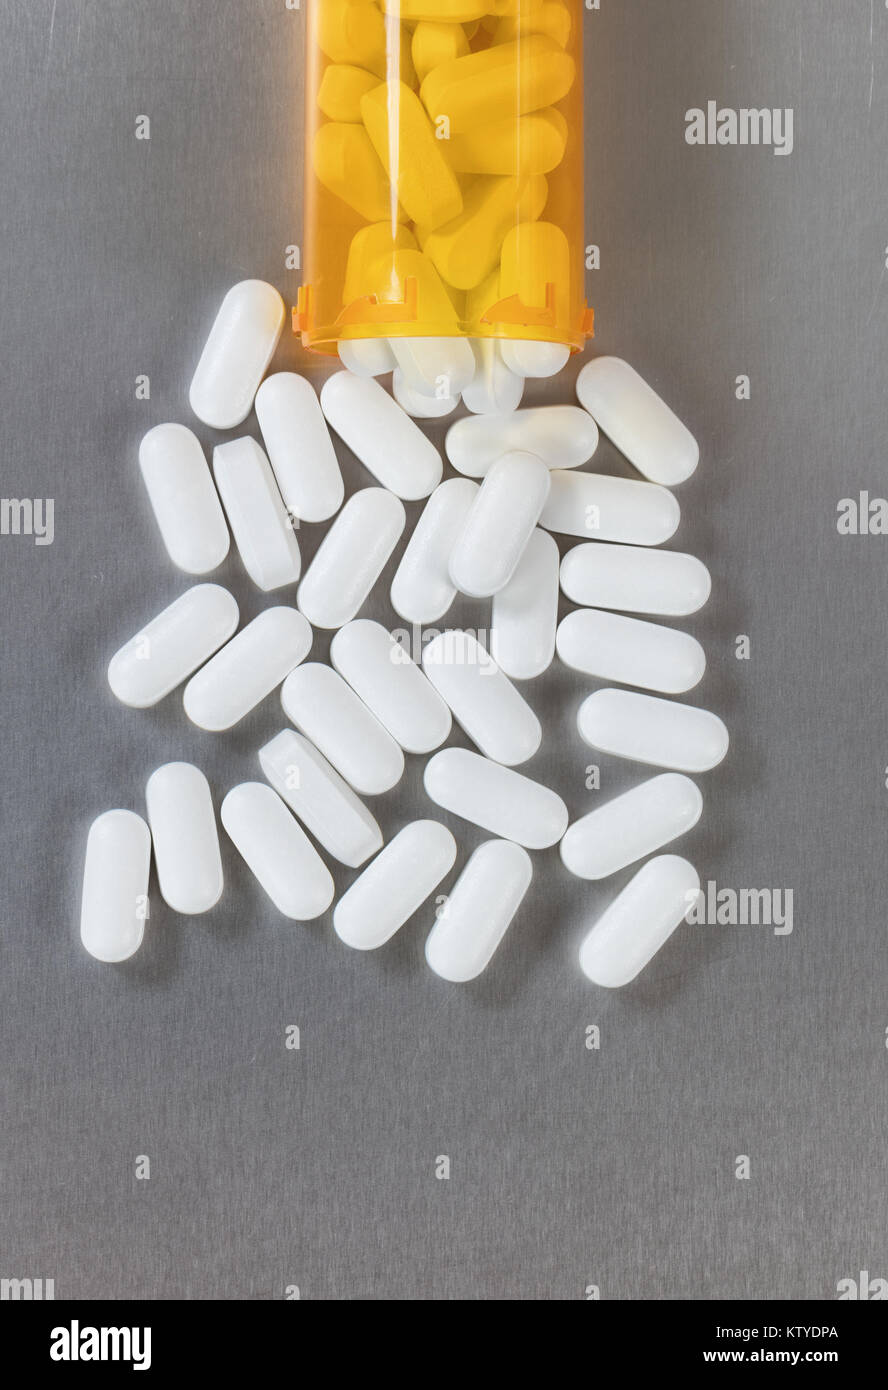 Oxycodone opioid Tabletten und Flasche in der Ansicht von oben  Stockfotografie - Alamy